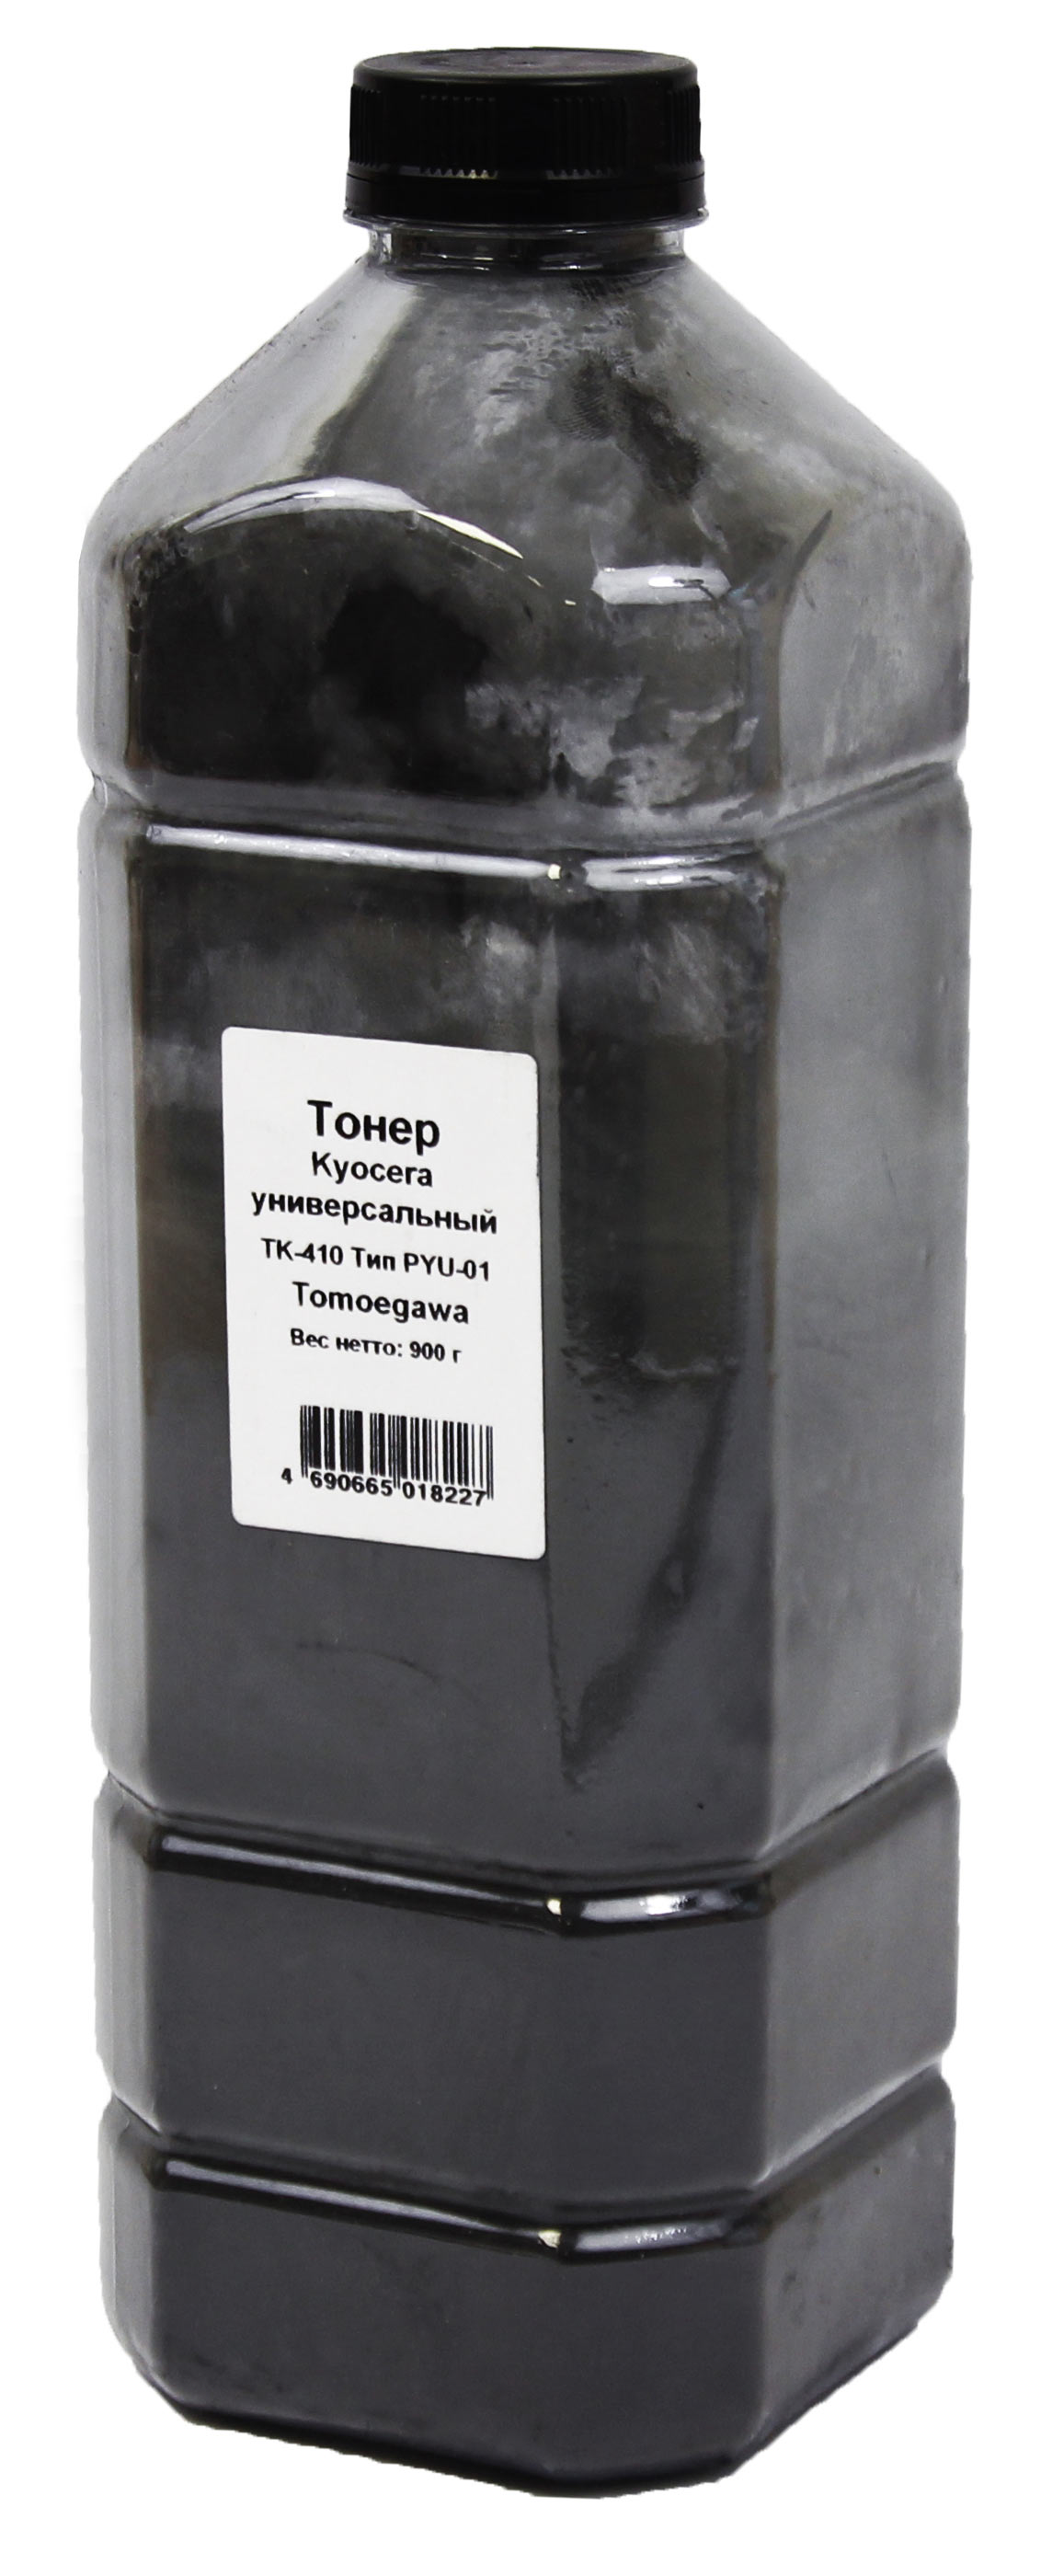 Тонер Tomoegawa Универсальный для Kyocera TK-410 (Тип PYU-01), Bk, 900 г, канистра